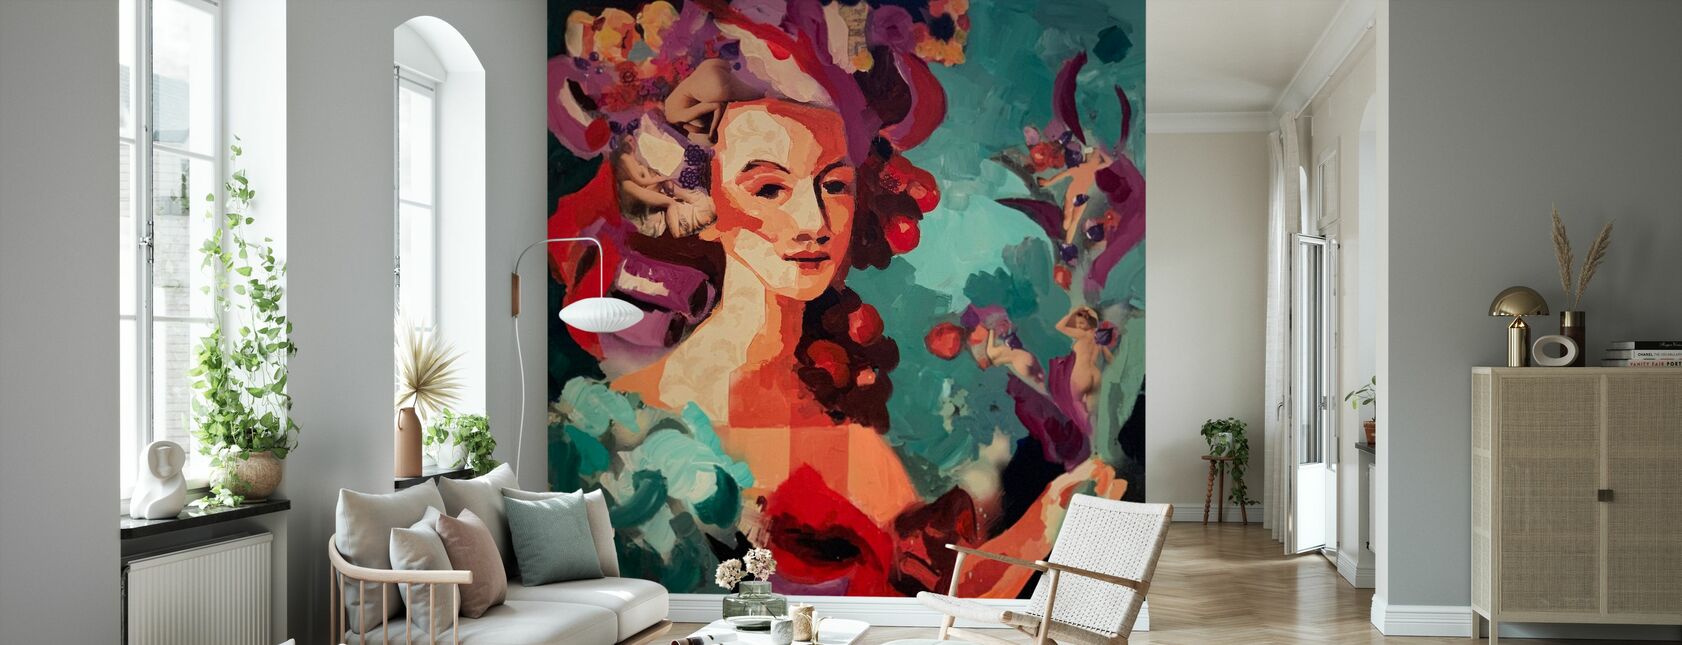 Marie Antoinette Party - Wallpaper - Living Room